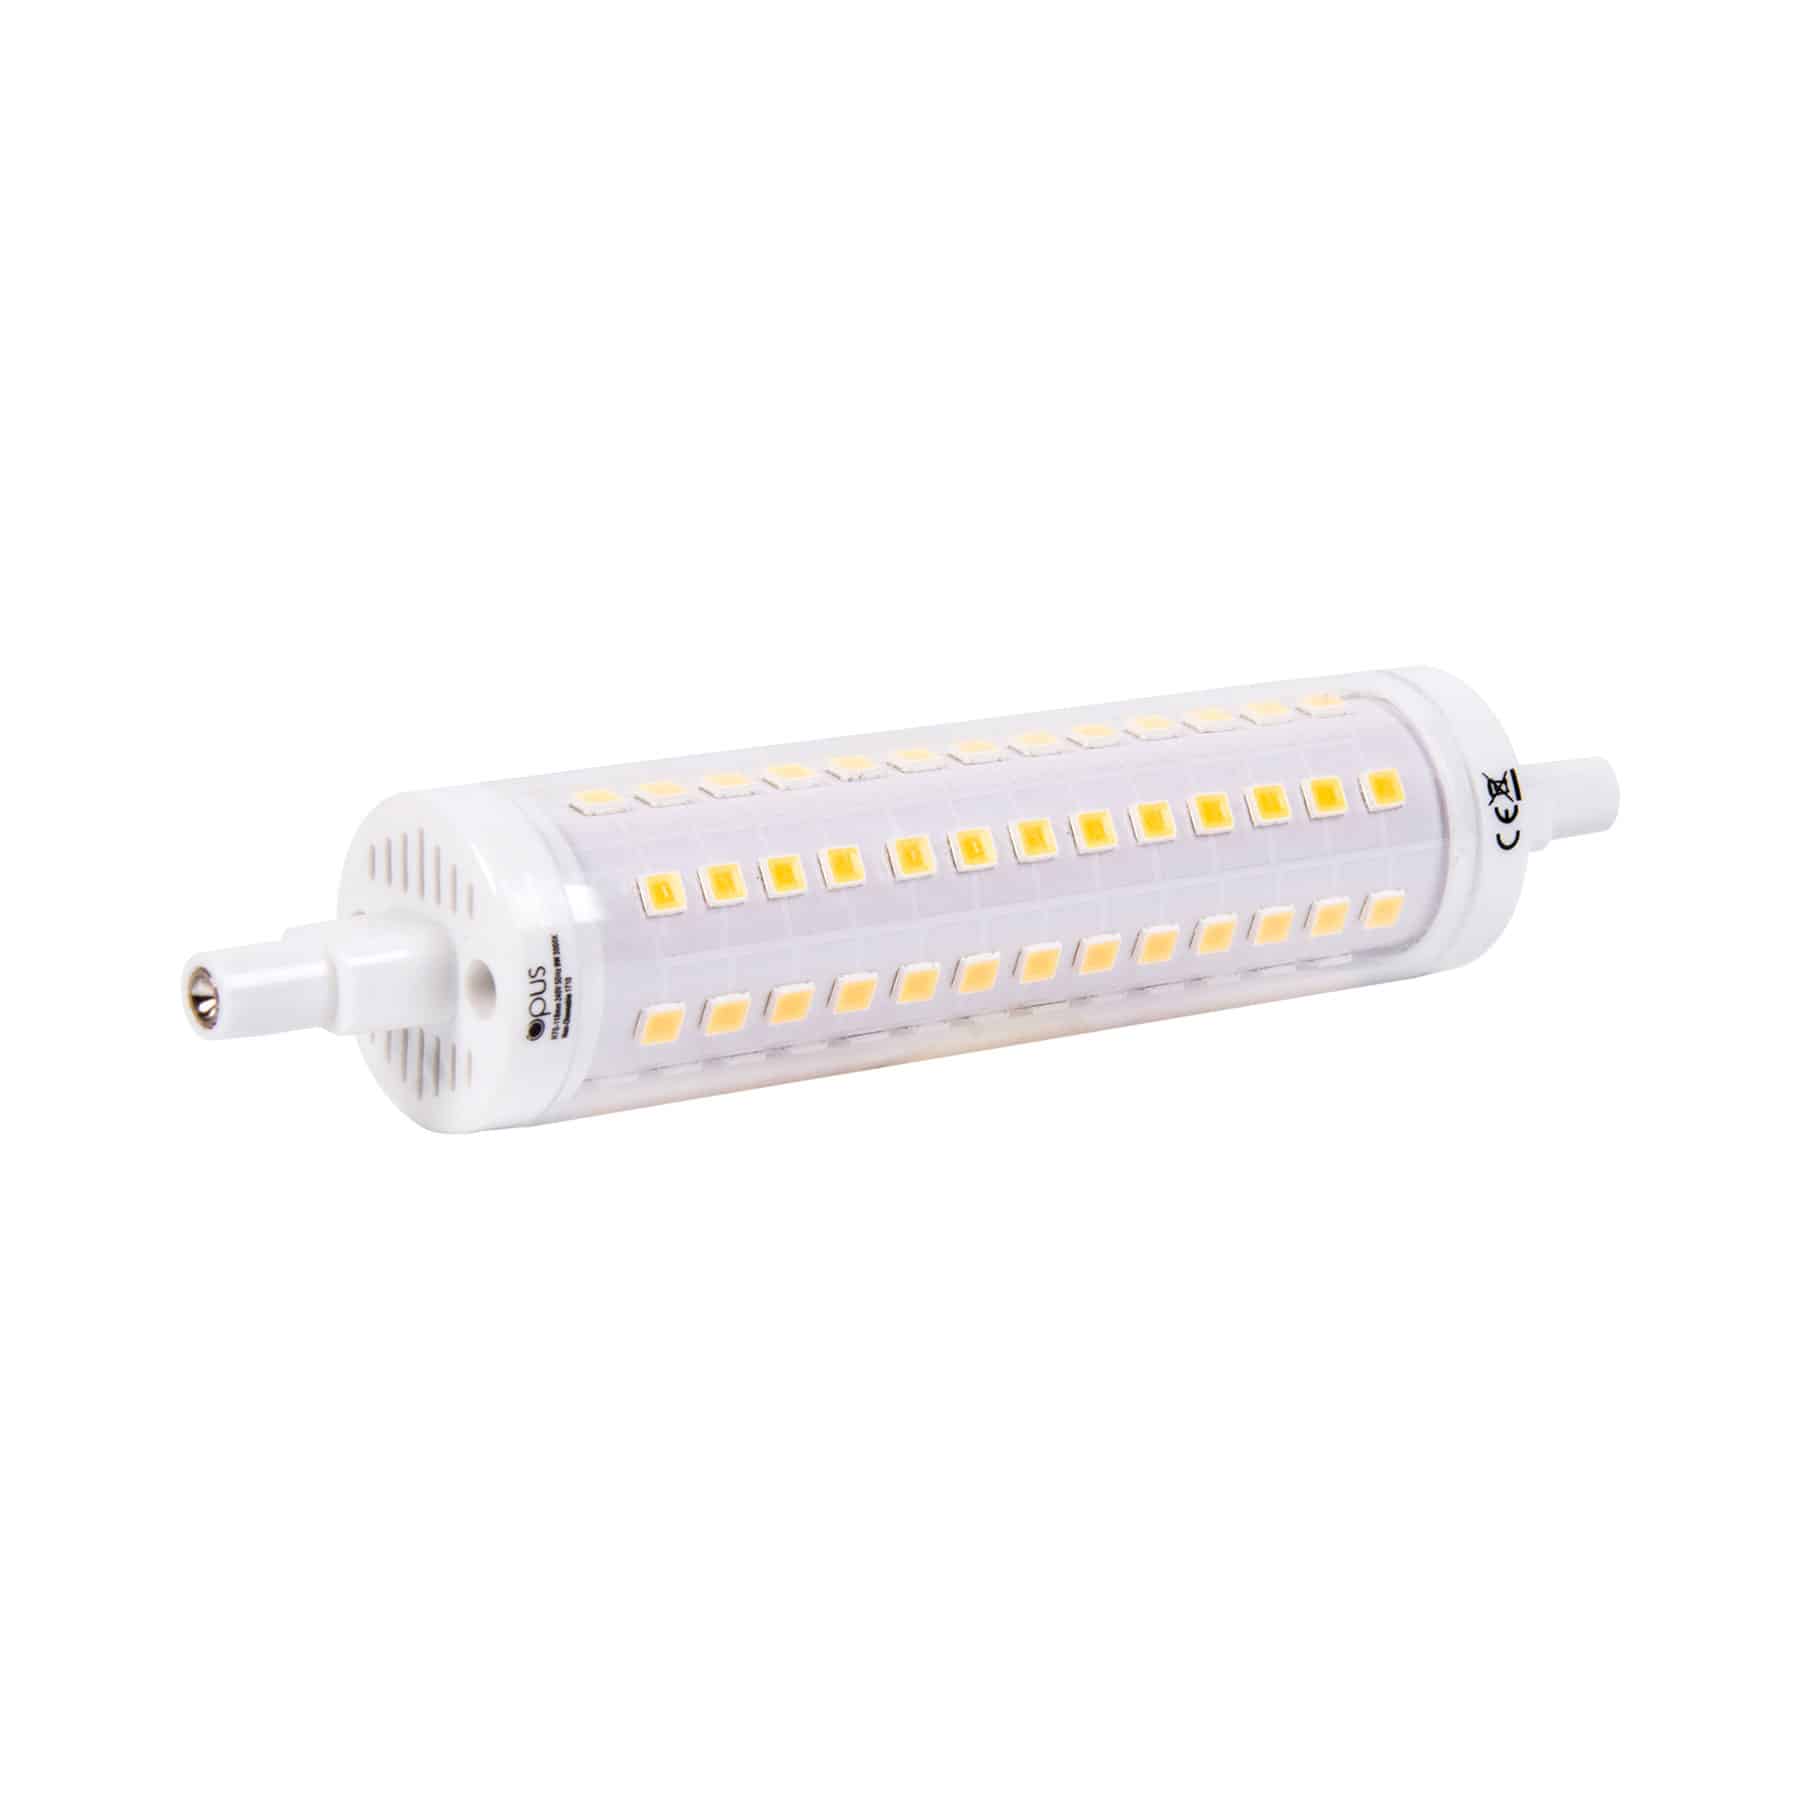 Opus Lighting Technology 9watt Linear LED R7s 118mm Warm White Bulb